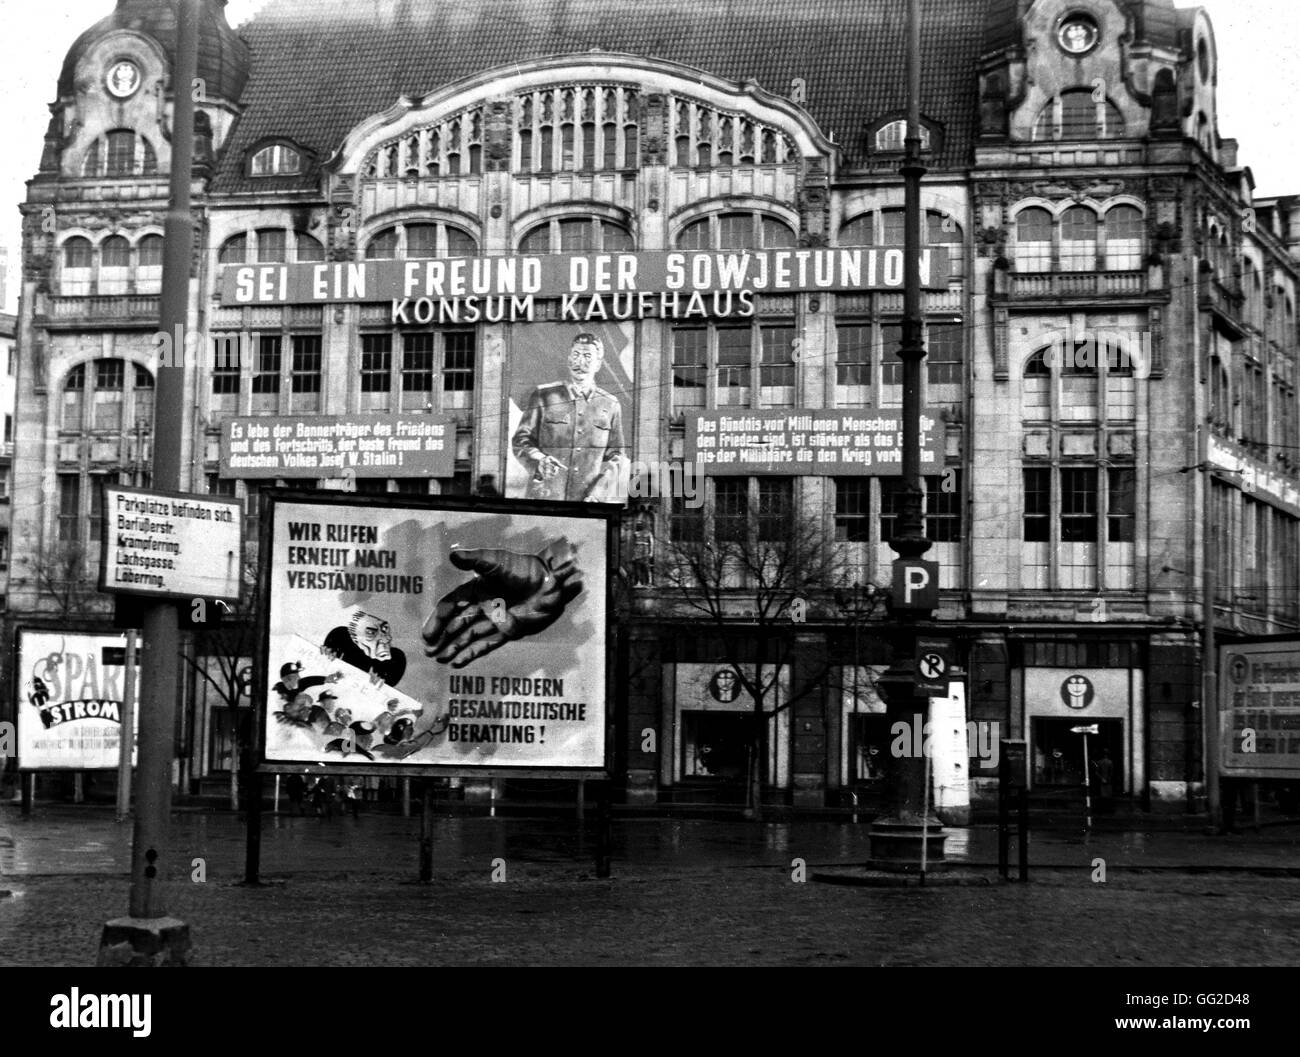 Berlin est : propagande dans la zone soviétique c.1950 La République démocratique allemande (RDA) Banque D'Images